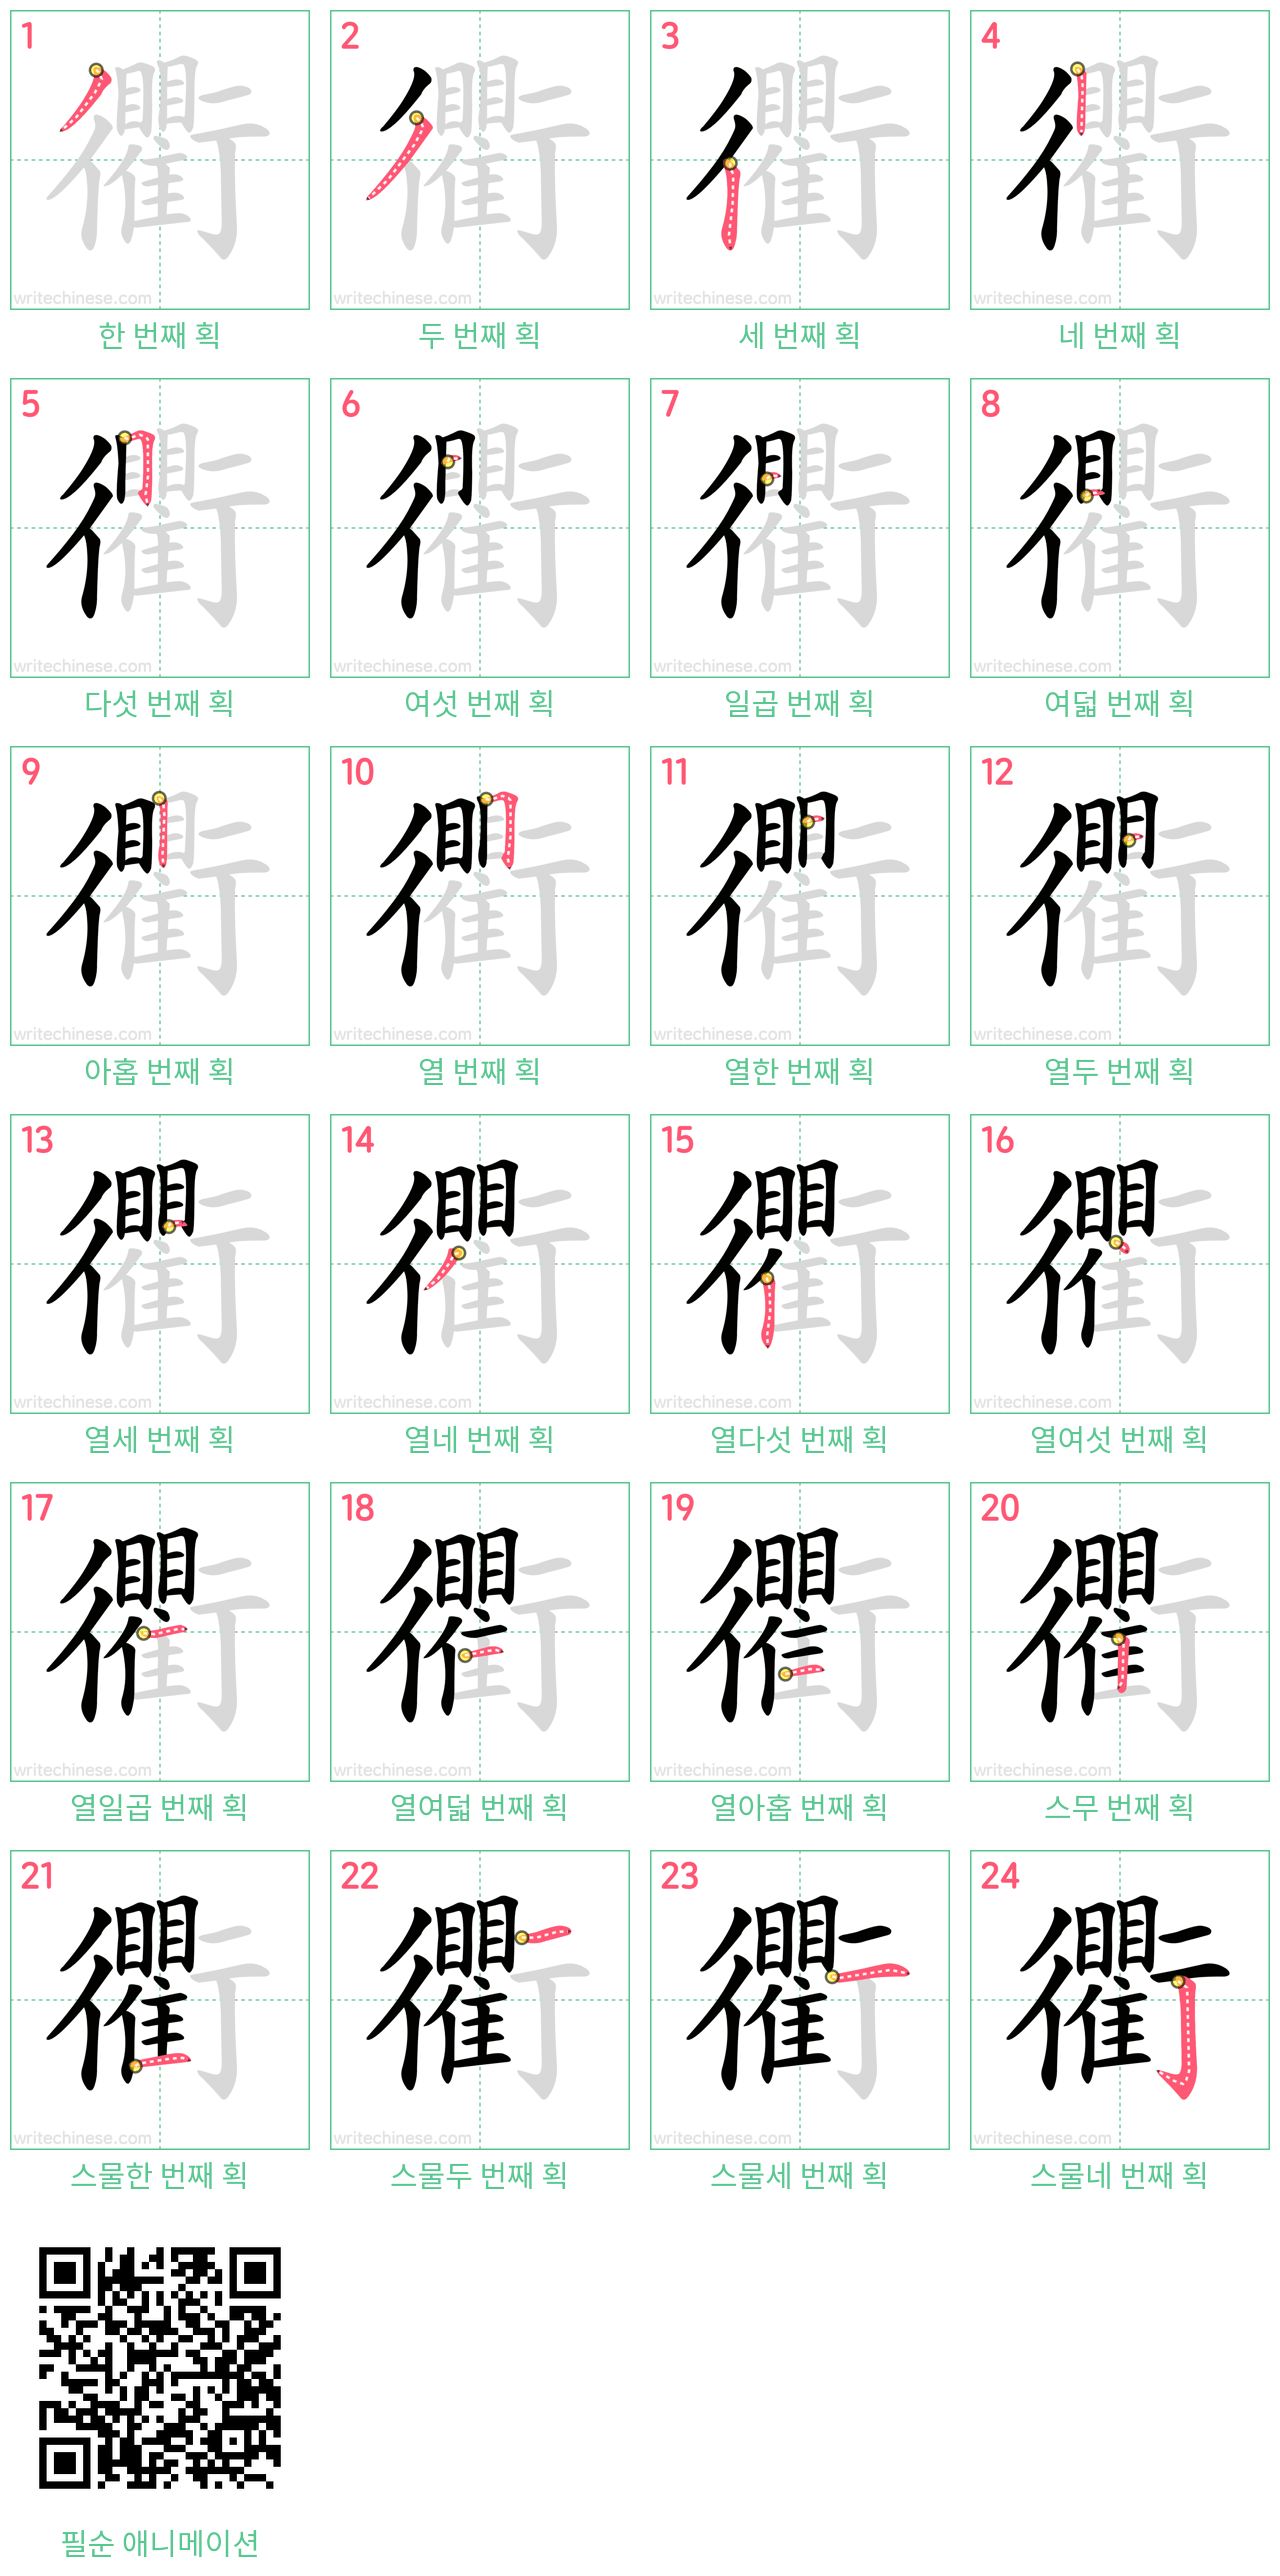 衢 step-by-step stroke order diagrams